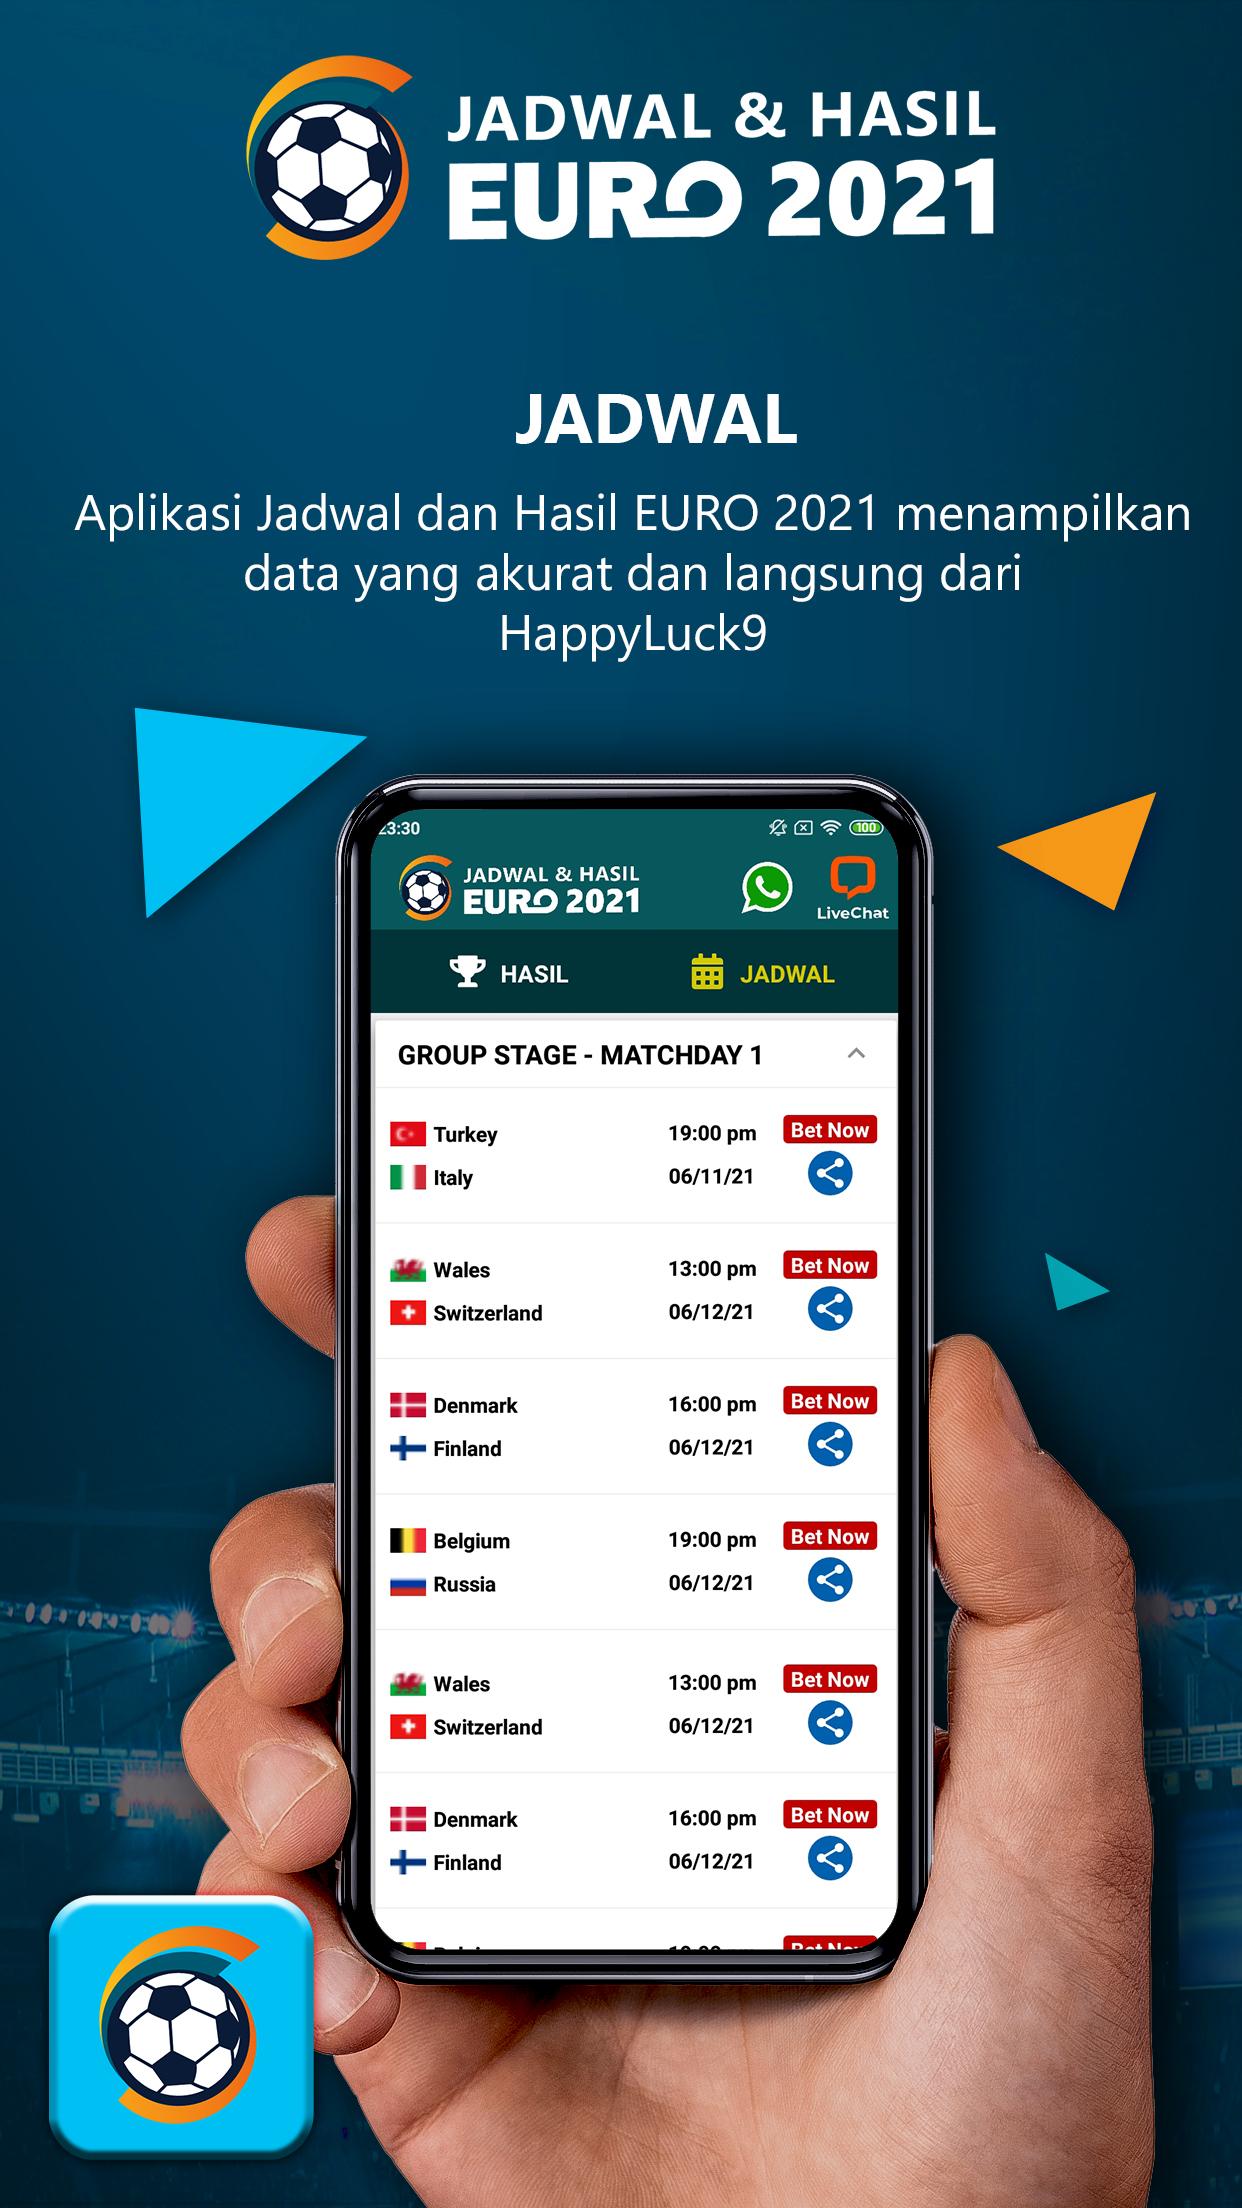 Jadwal & Hasil EURO 2021 1.0.8 Screenshot 2